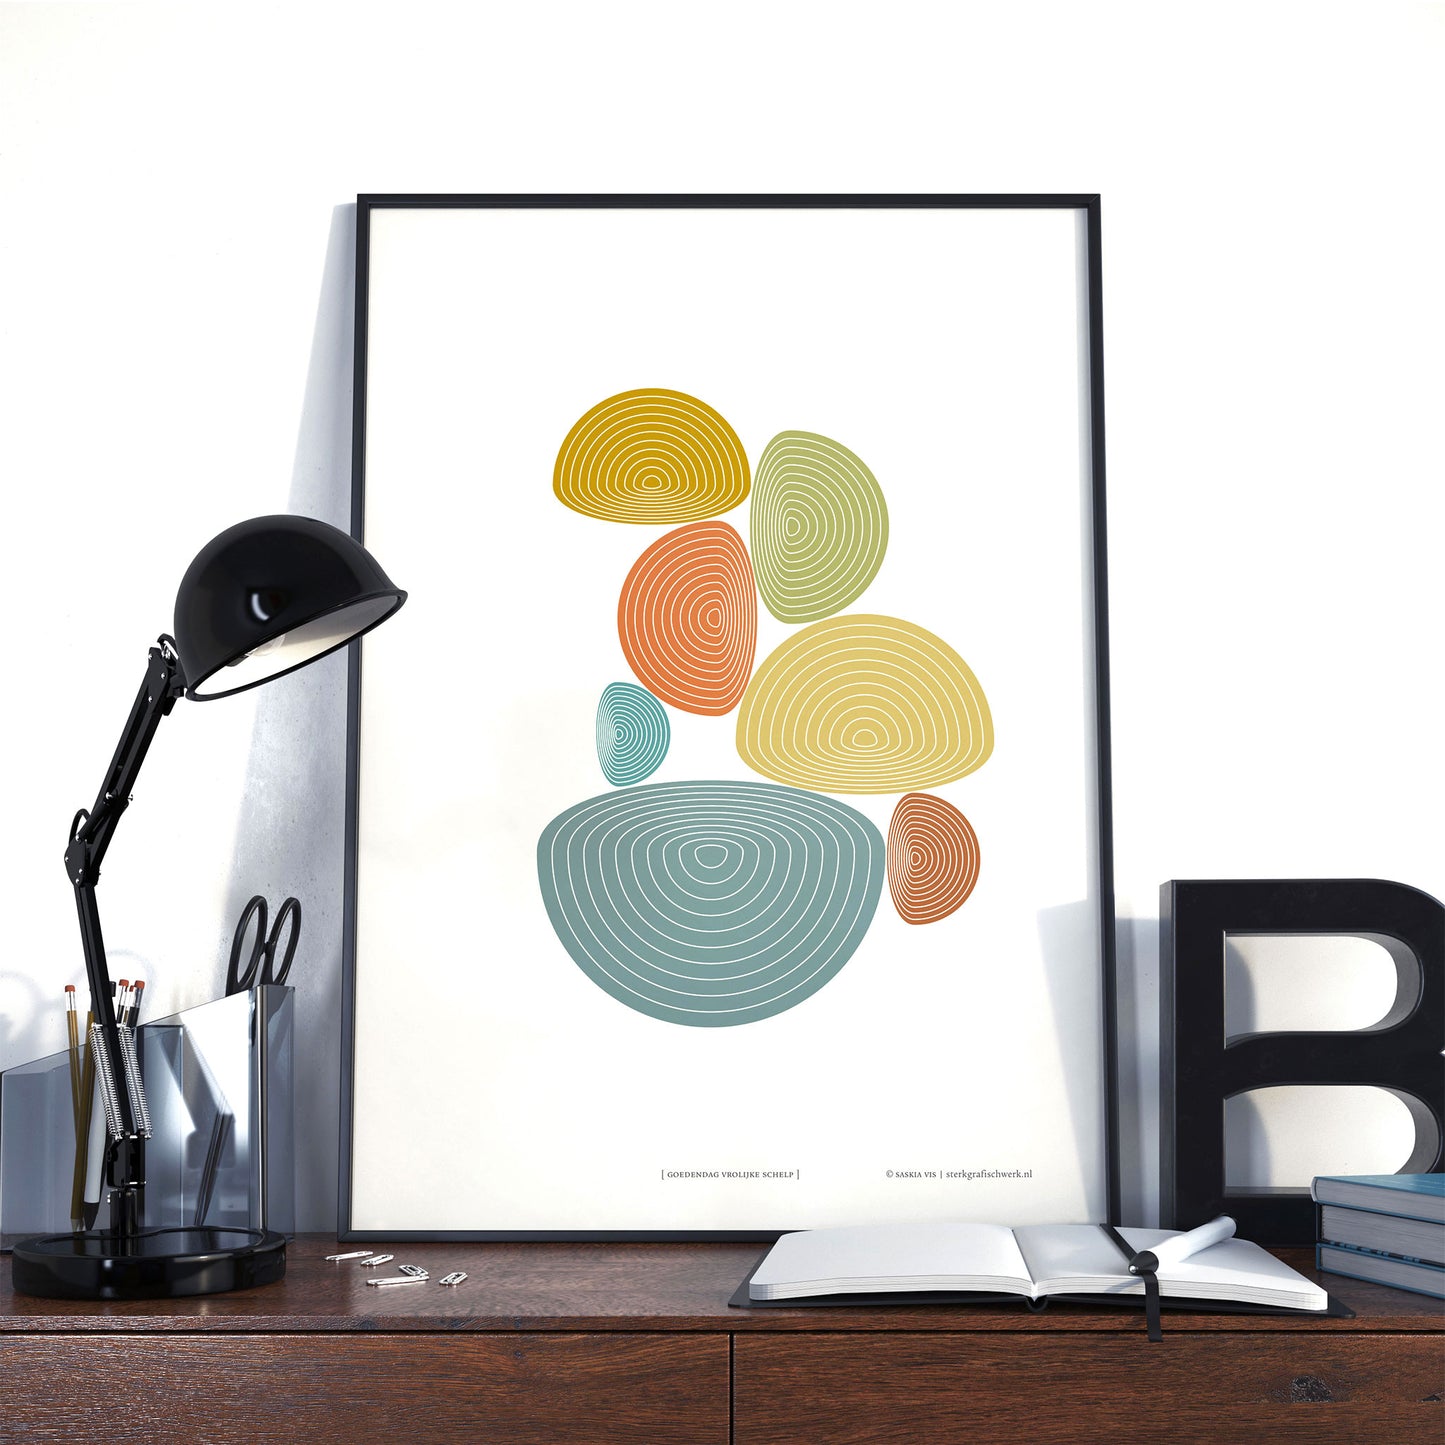 Productafbeelding poster "goedendag vrolijke schelp" als foto in een interieur, ter impressie